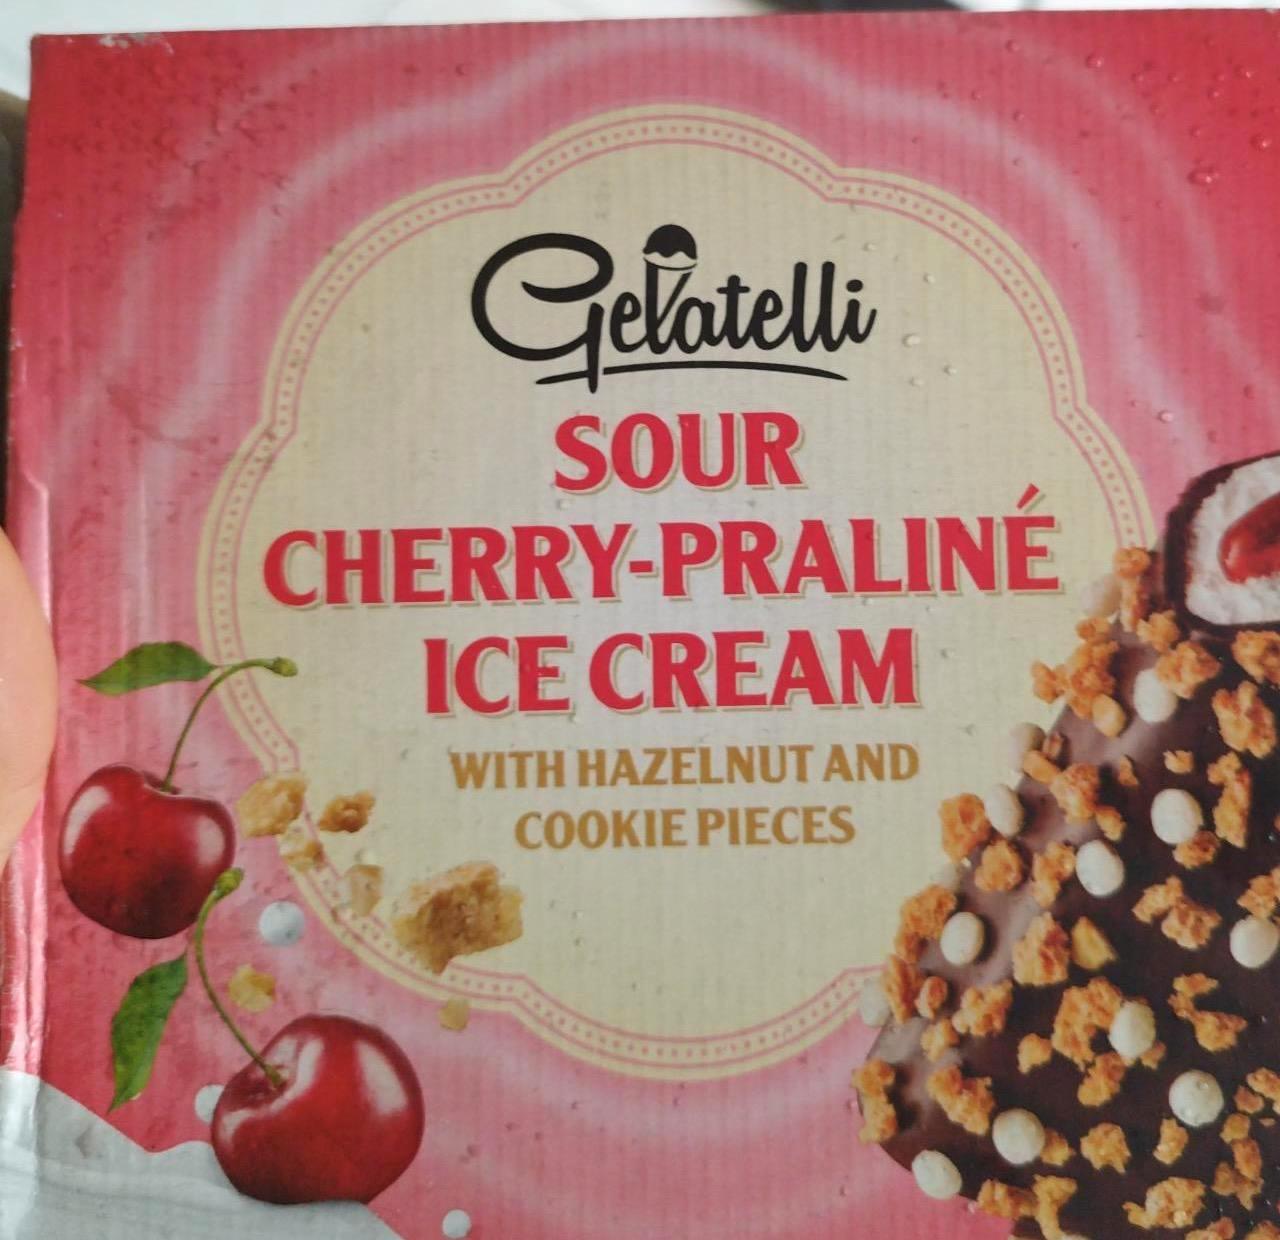 Képek - Sour cherry praliné ice cream with hazelnut and cookie pieces Gelatelli